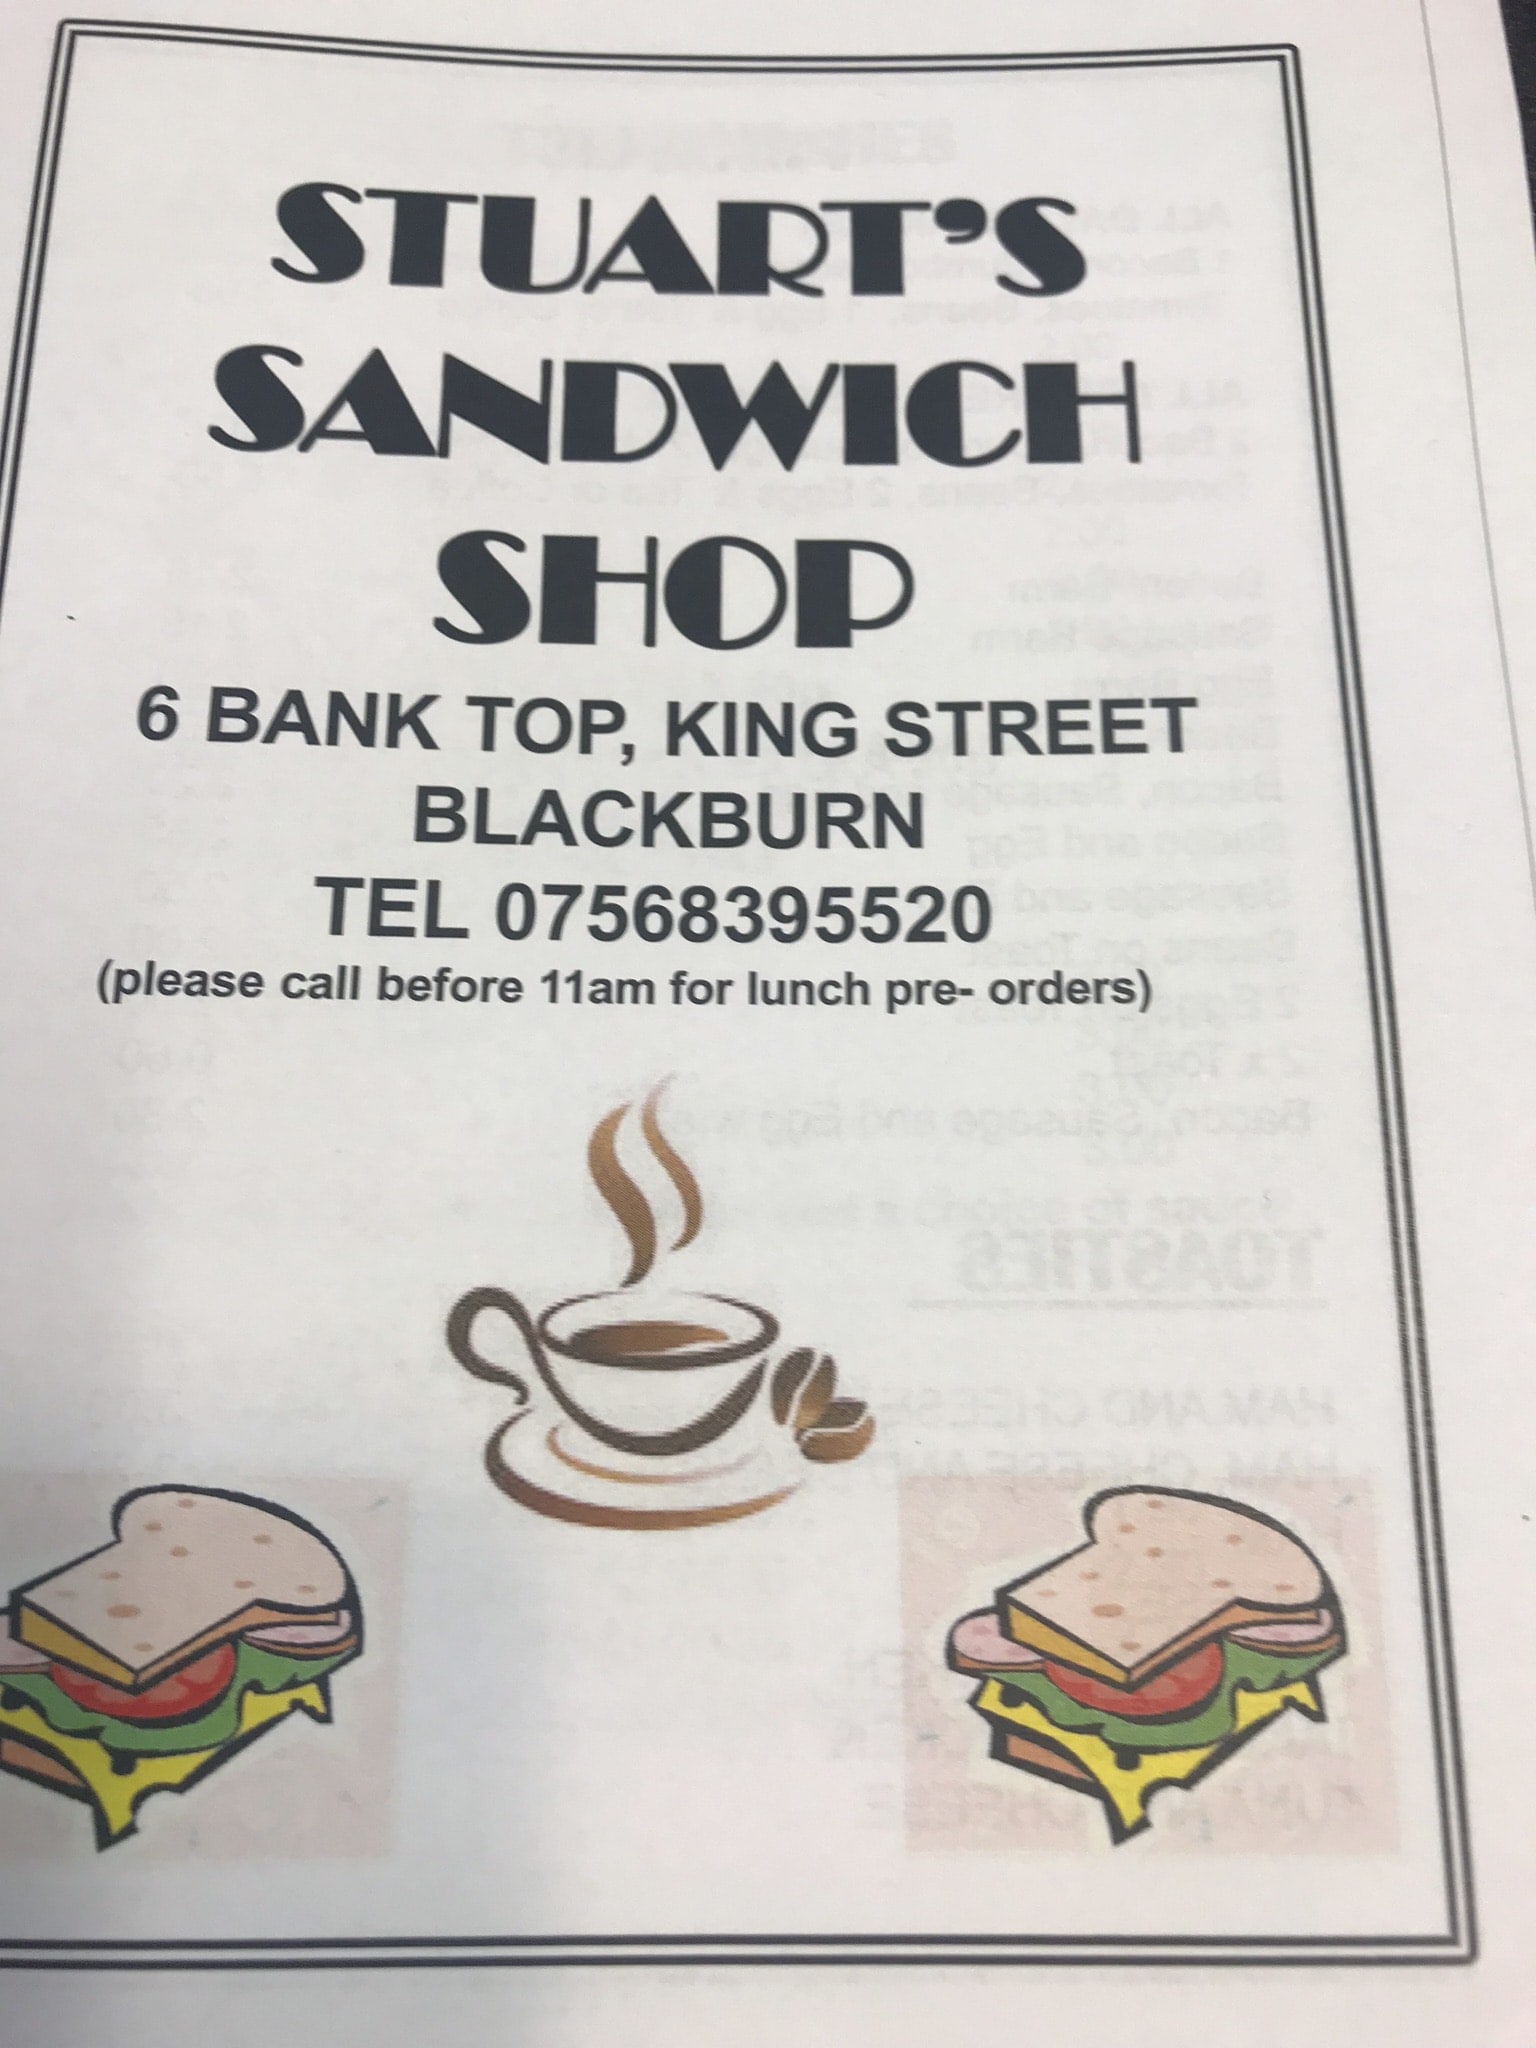 Stuart’s Sandwich Shop